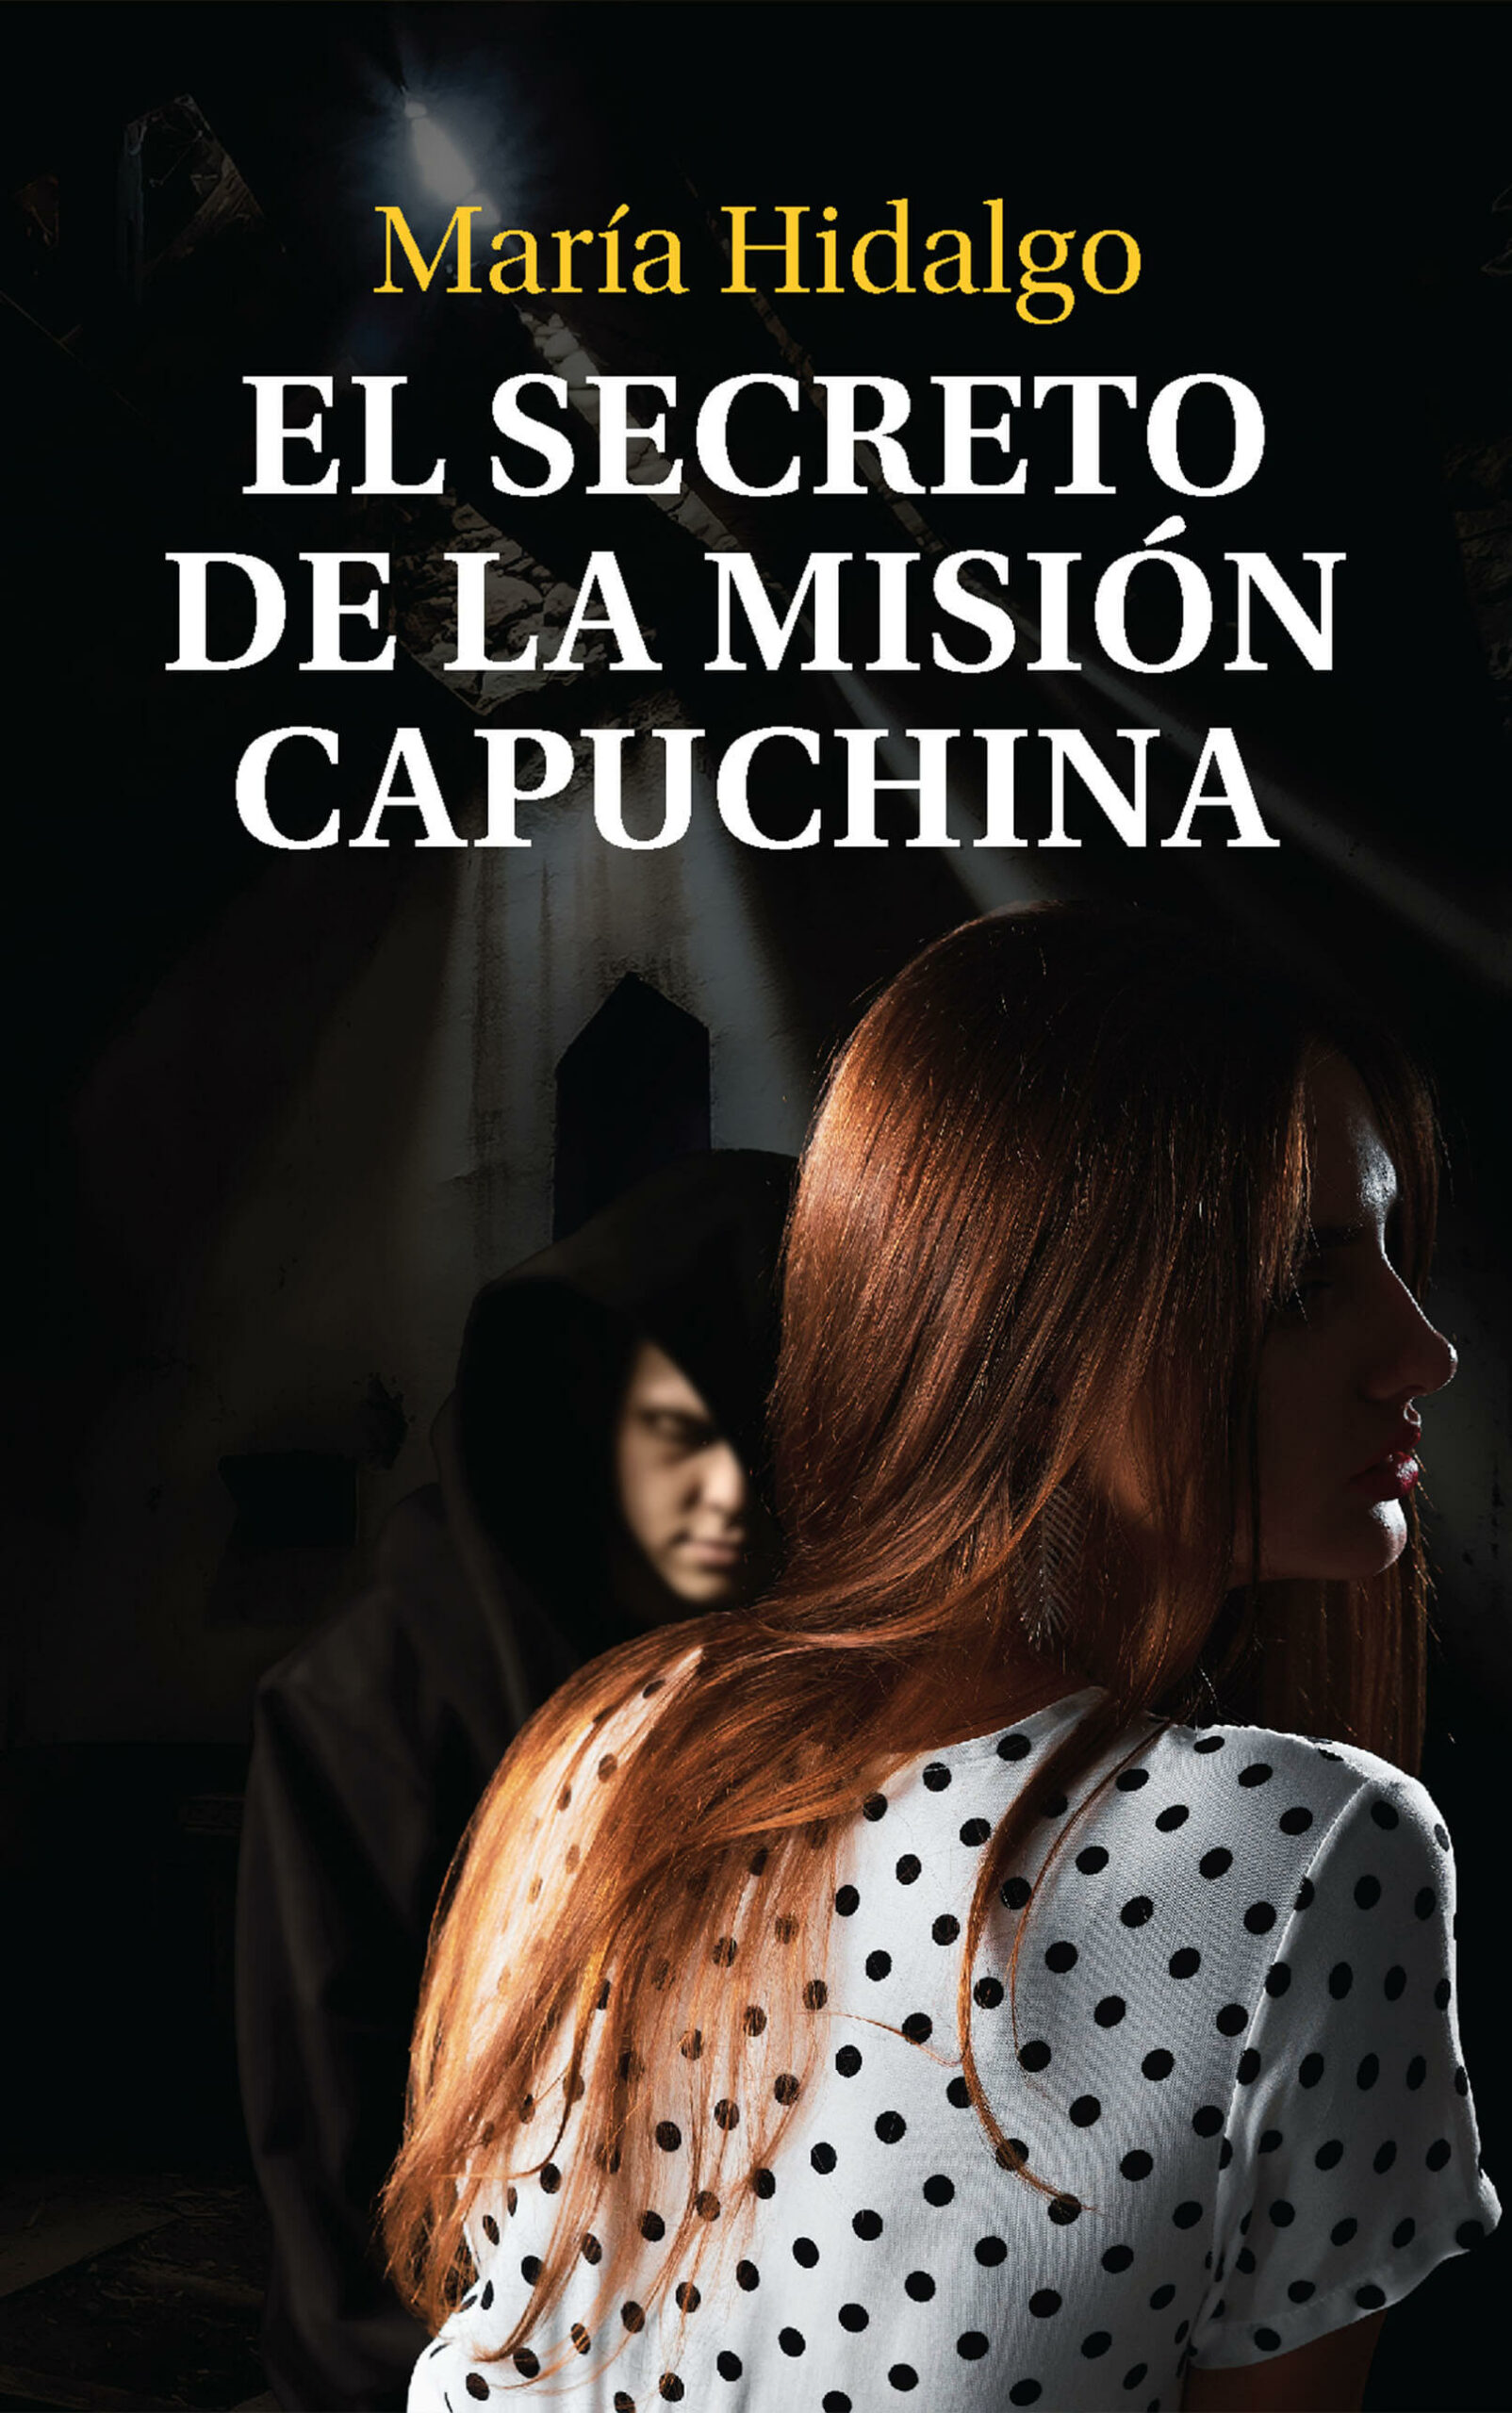 El secreto de la misión capuchina, de María Hidalgo